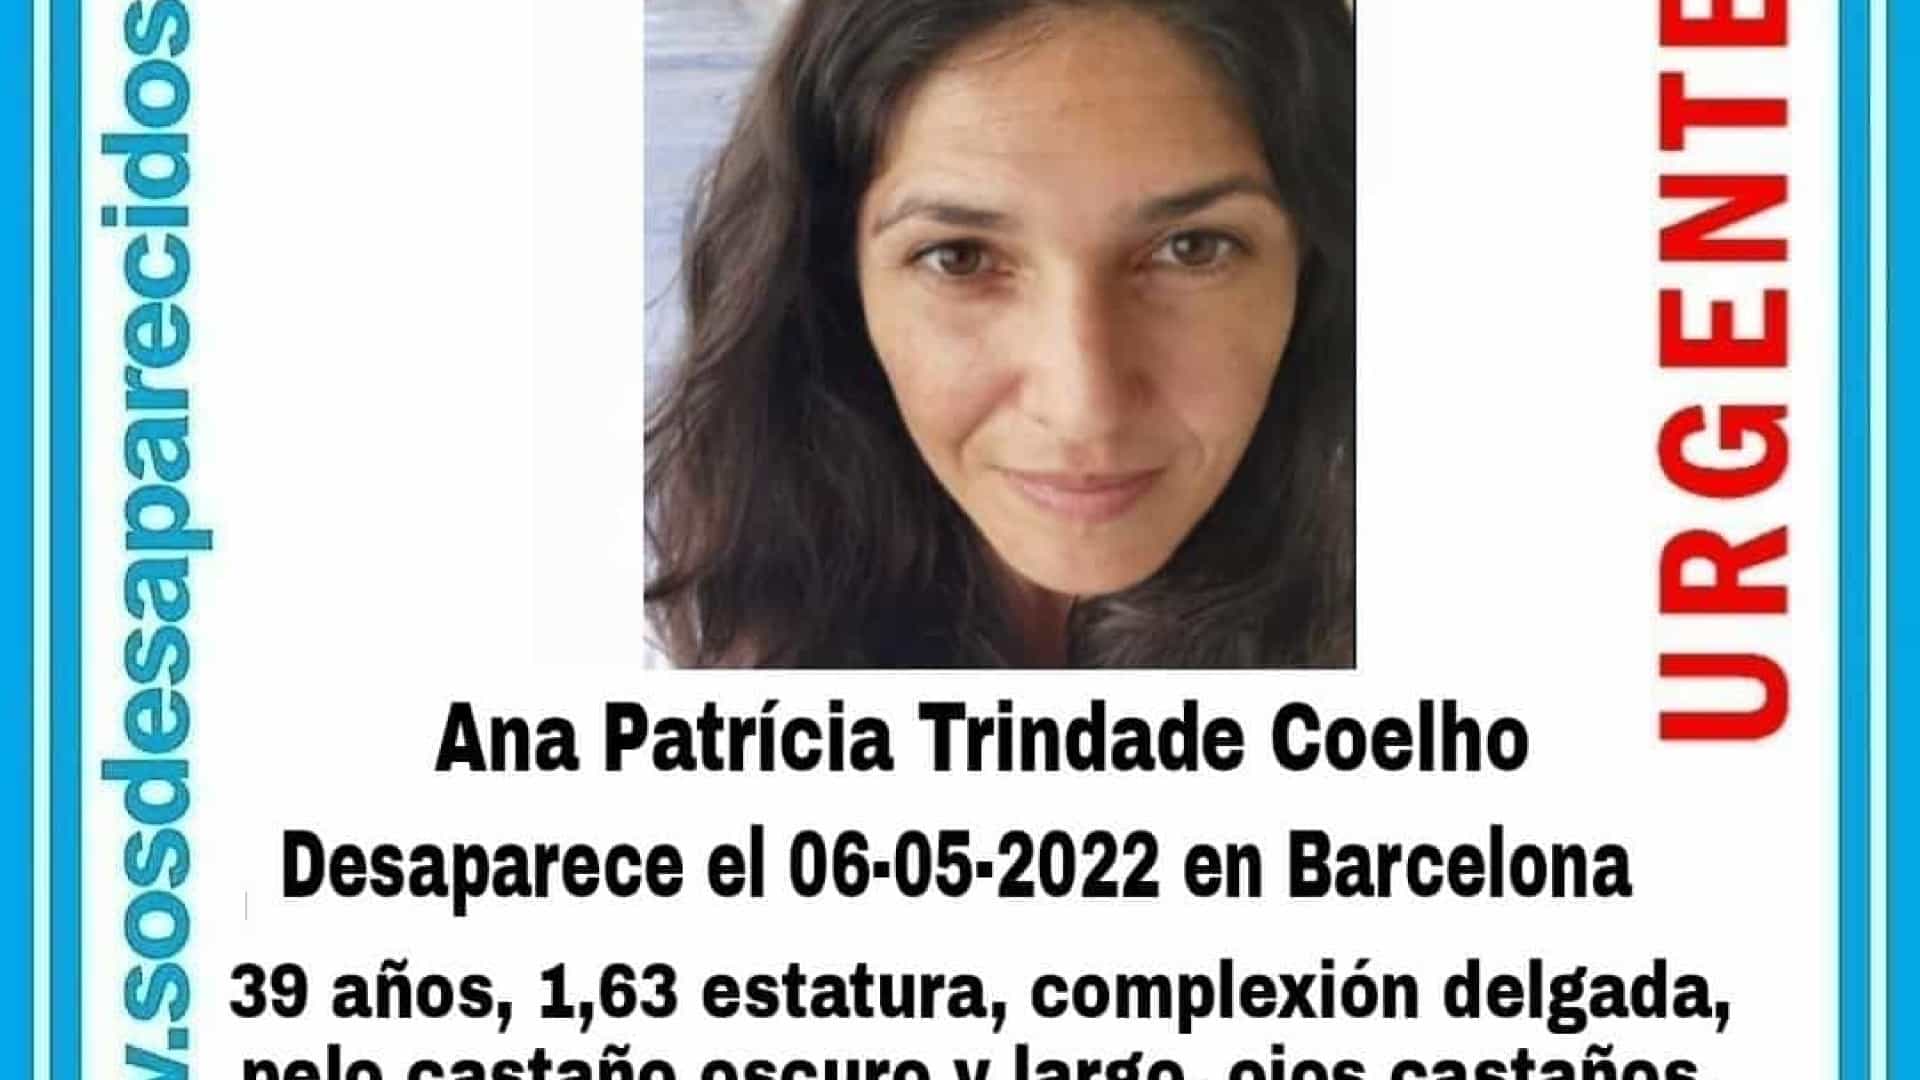 Portuguesa suspeita de raptar filho em Barcelona